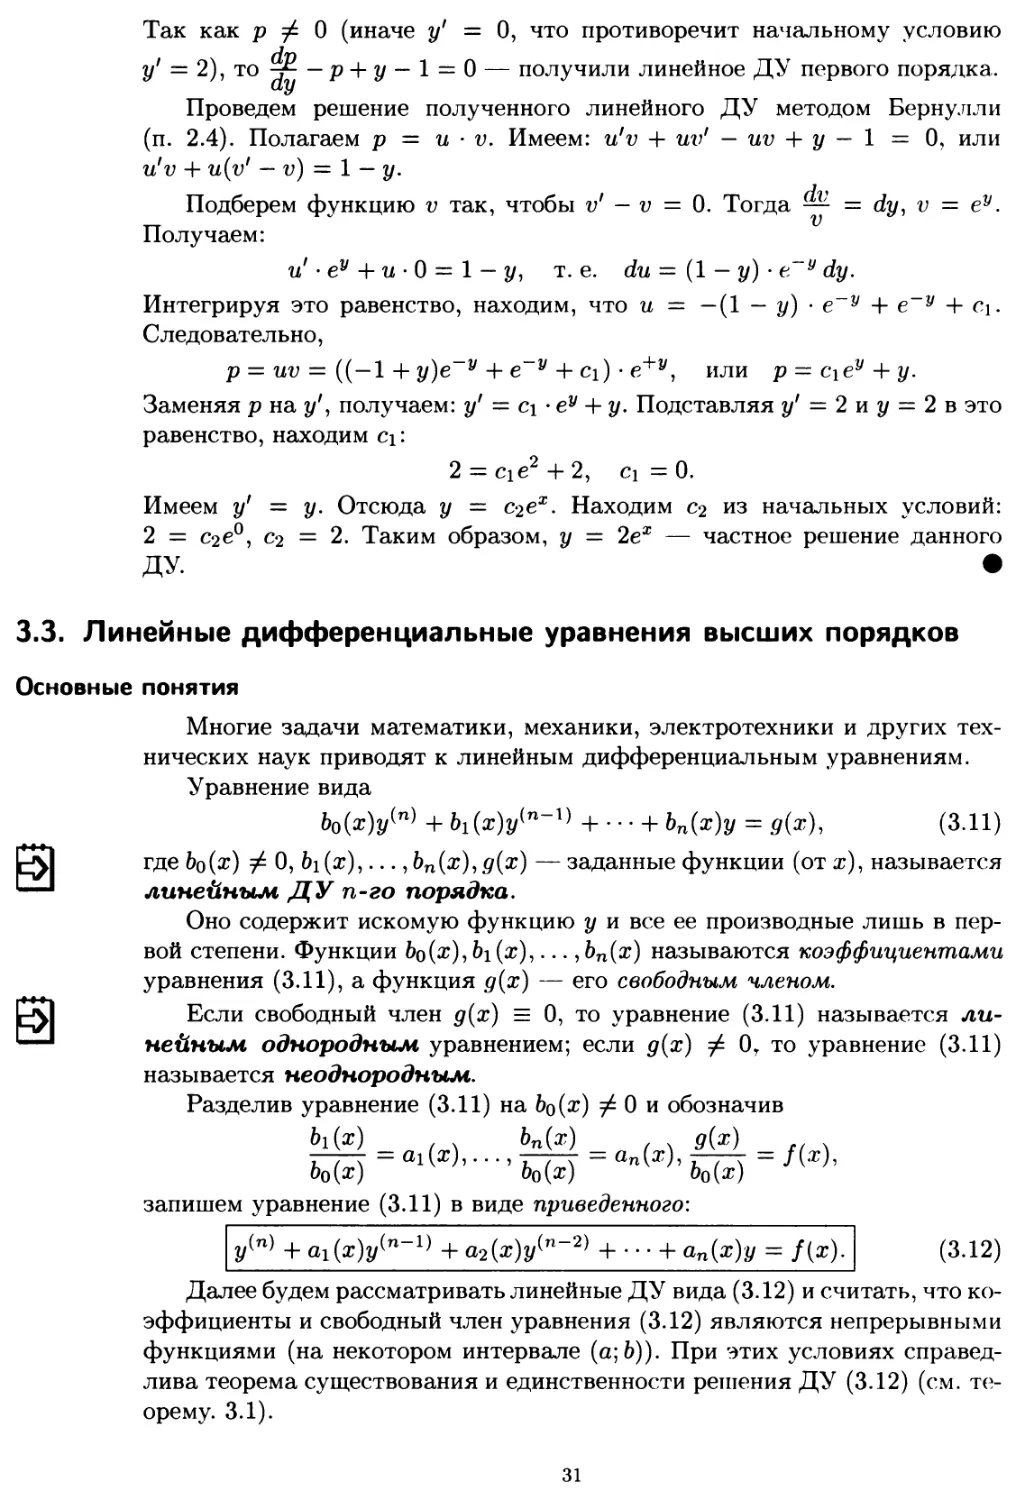 3.3. Линейные дифференциальные уравнения высших порядков